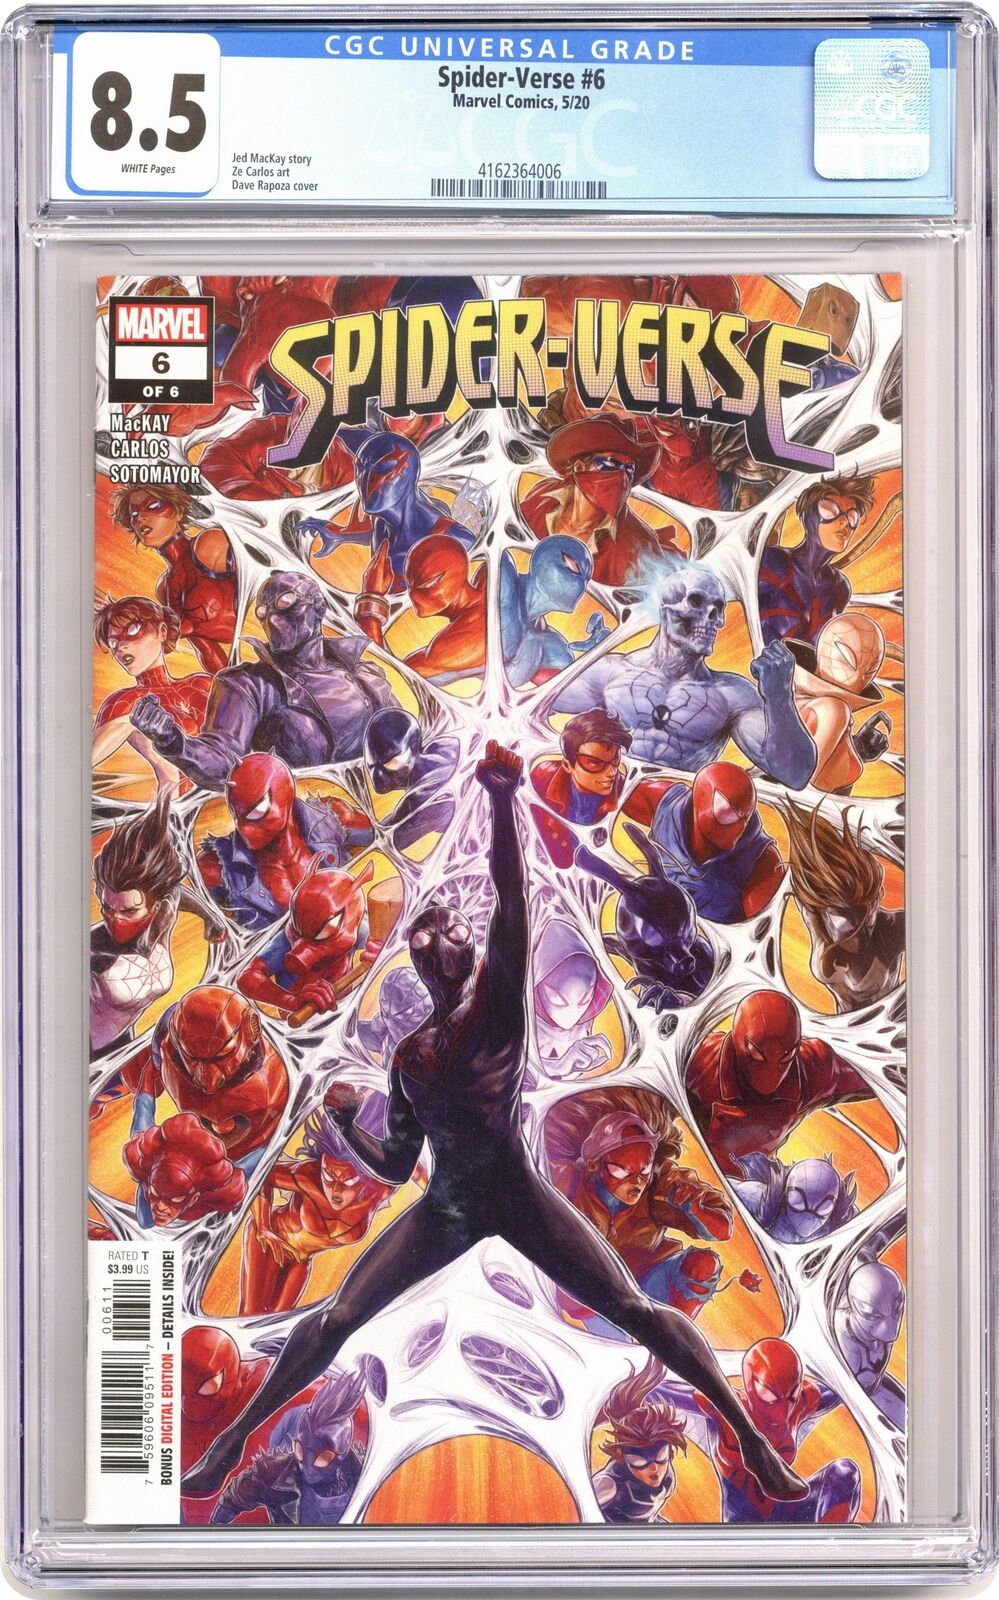 Spider-Verse #6 CGC 8.5 2020 4162364006